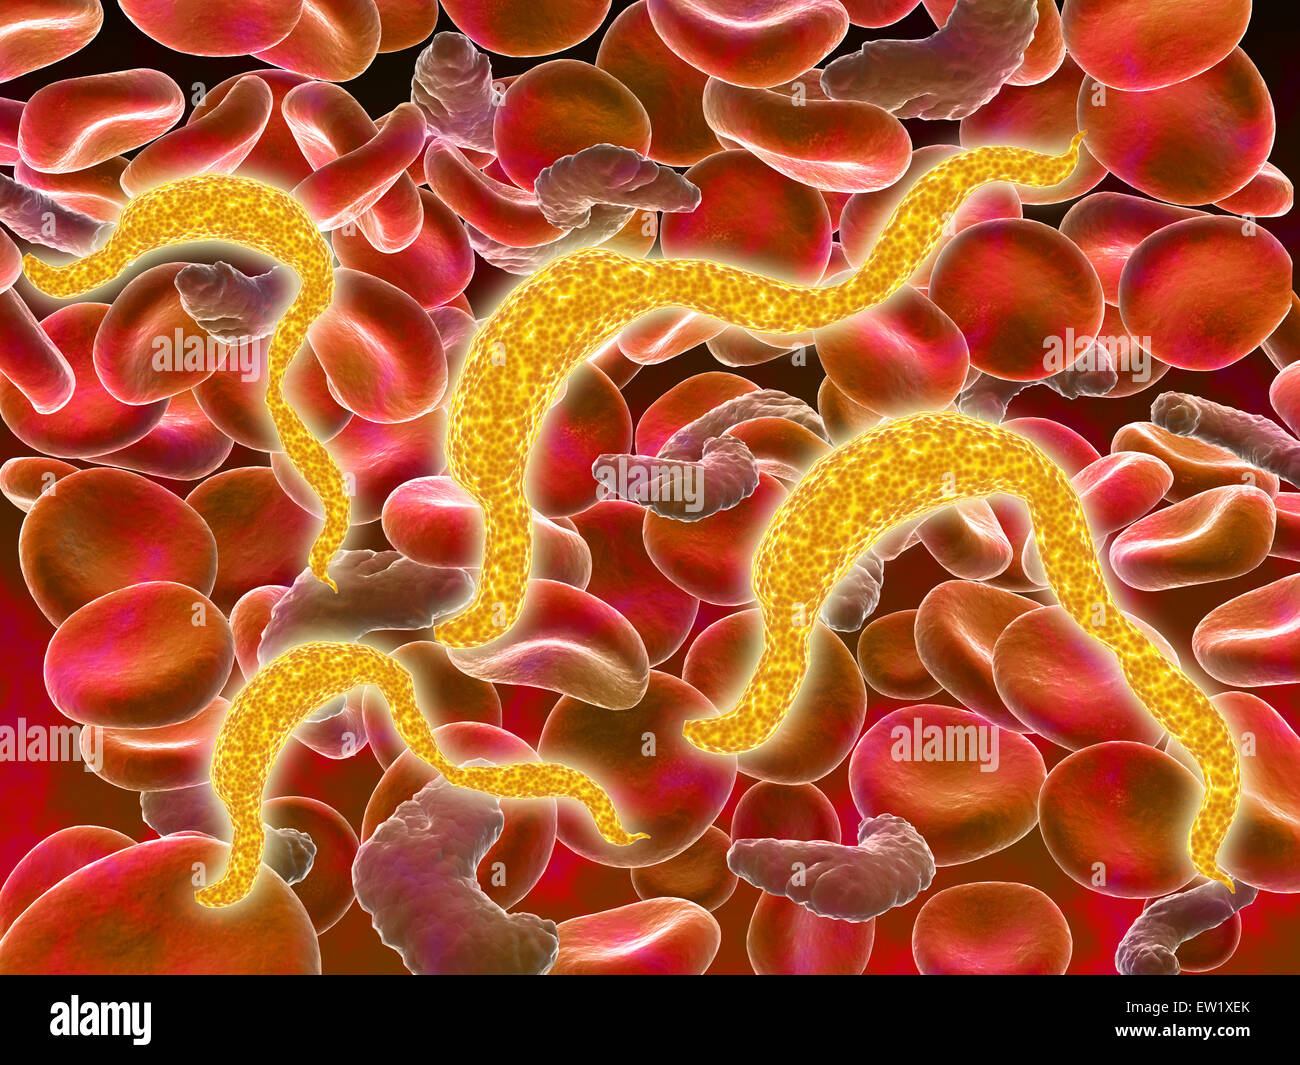 La trypanosomiase africaine dans les globules rouges. La trypanosomiase africaine, également connu sous le nom de maladie du sommeil, est un parasite infecti Banque D'Images